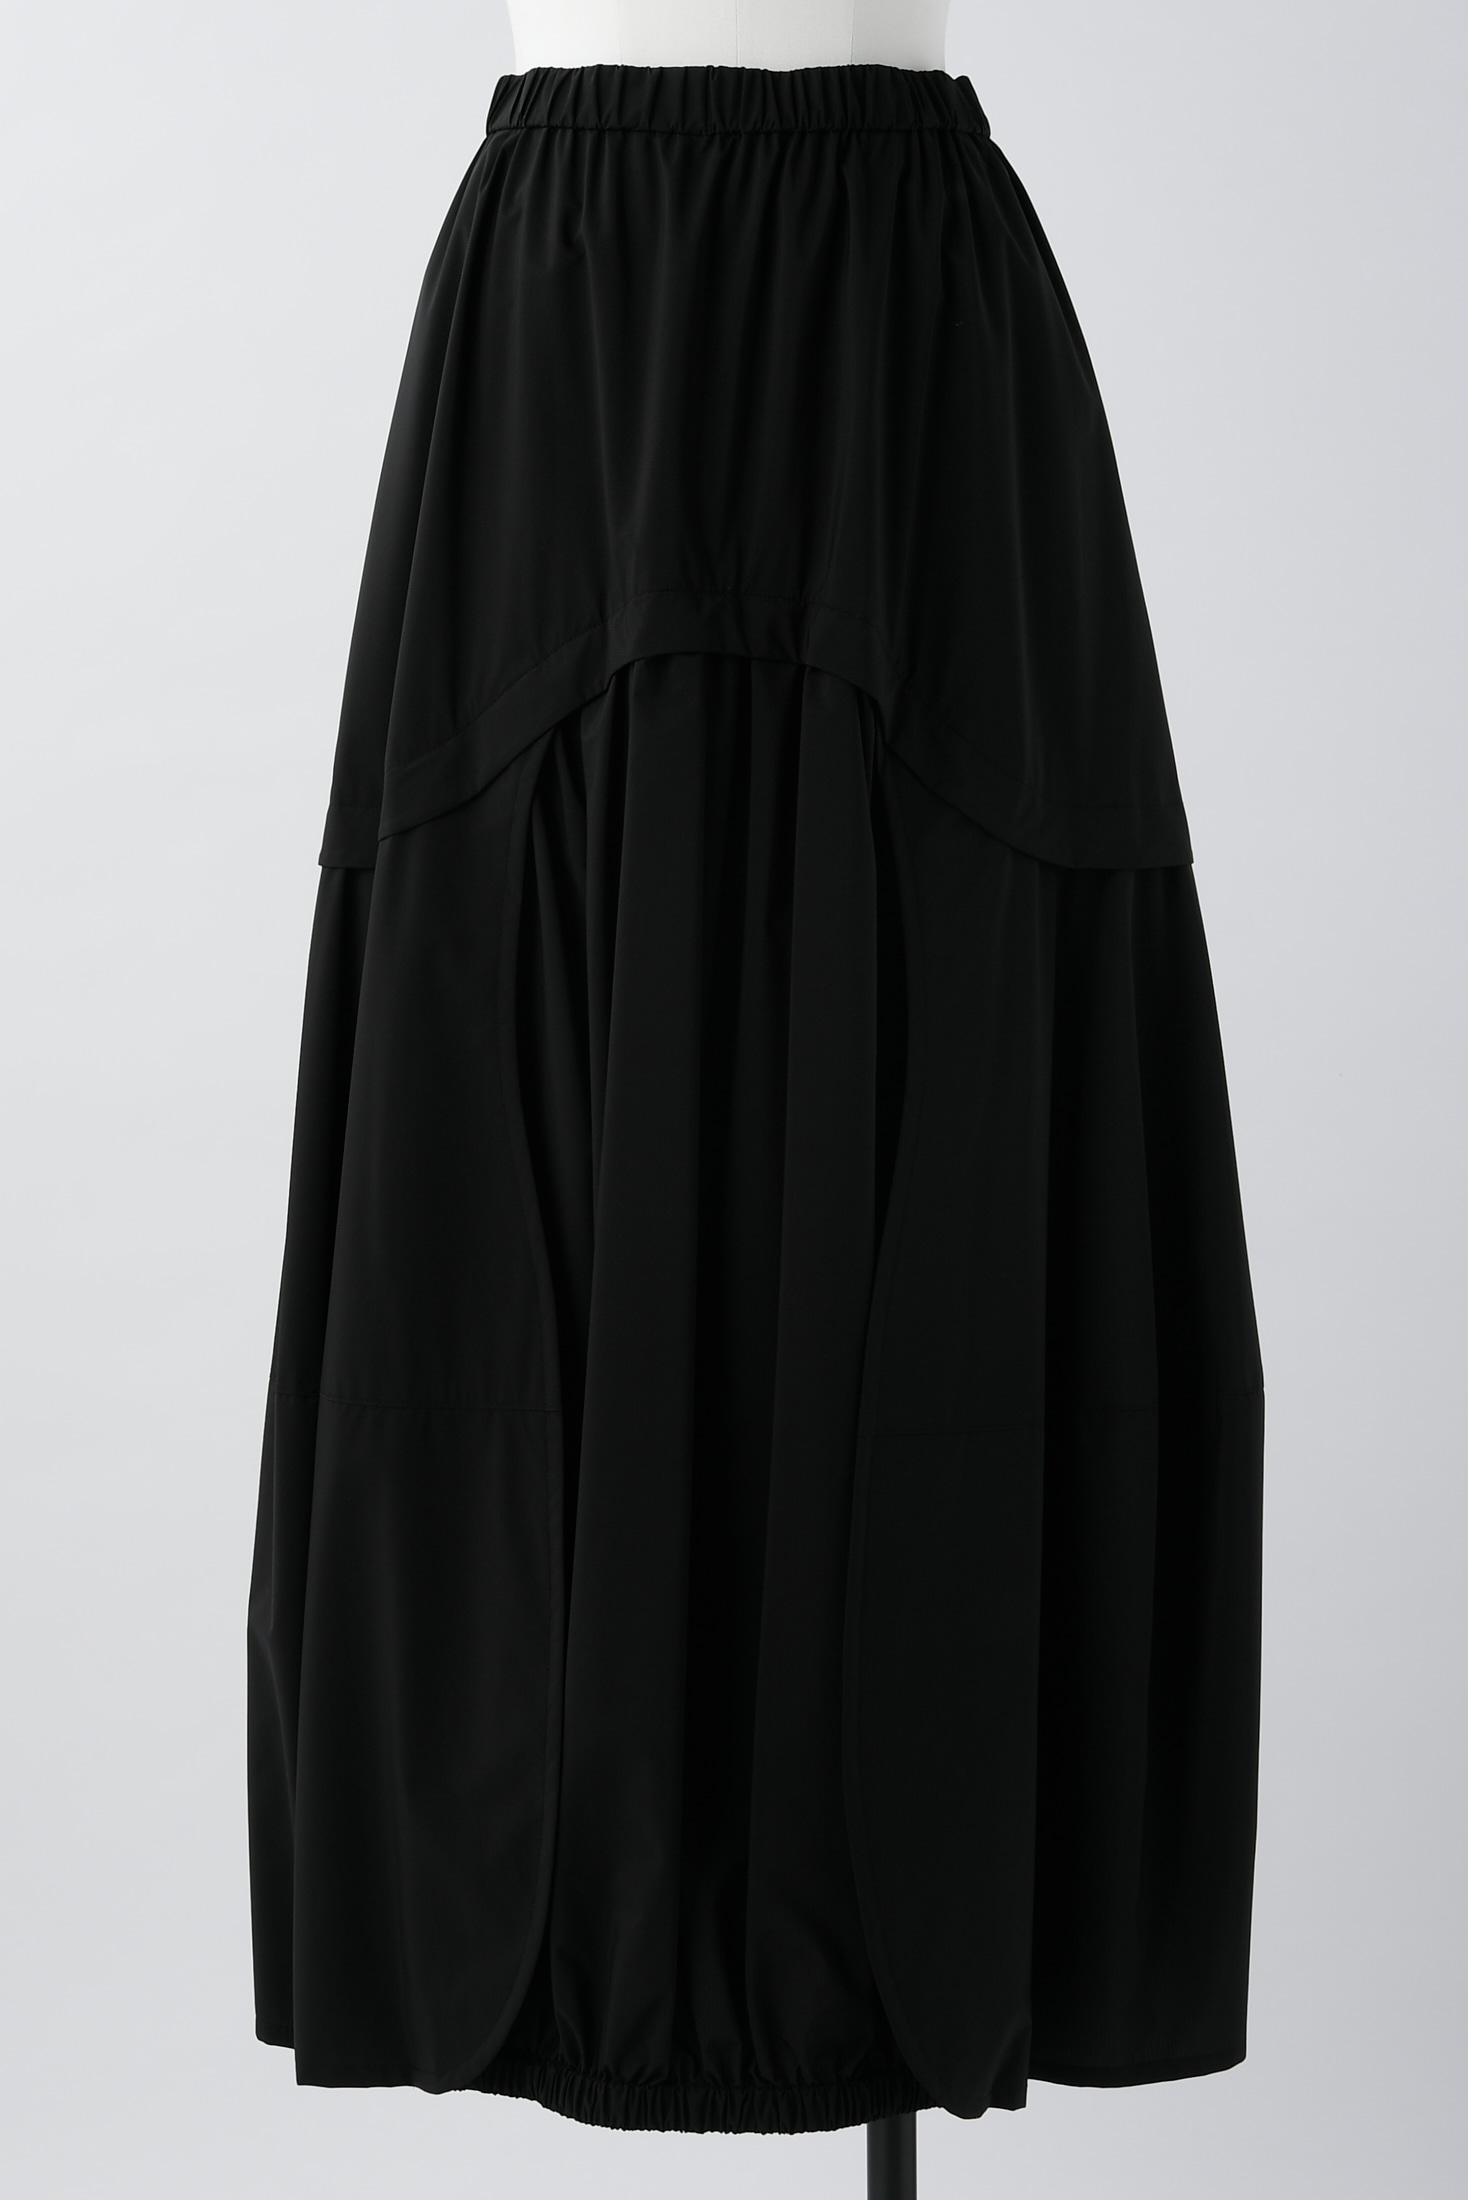 round drape skirt